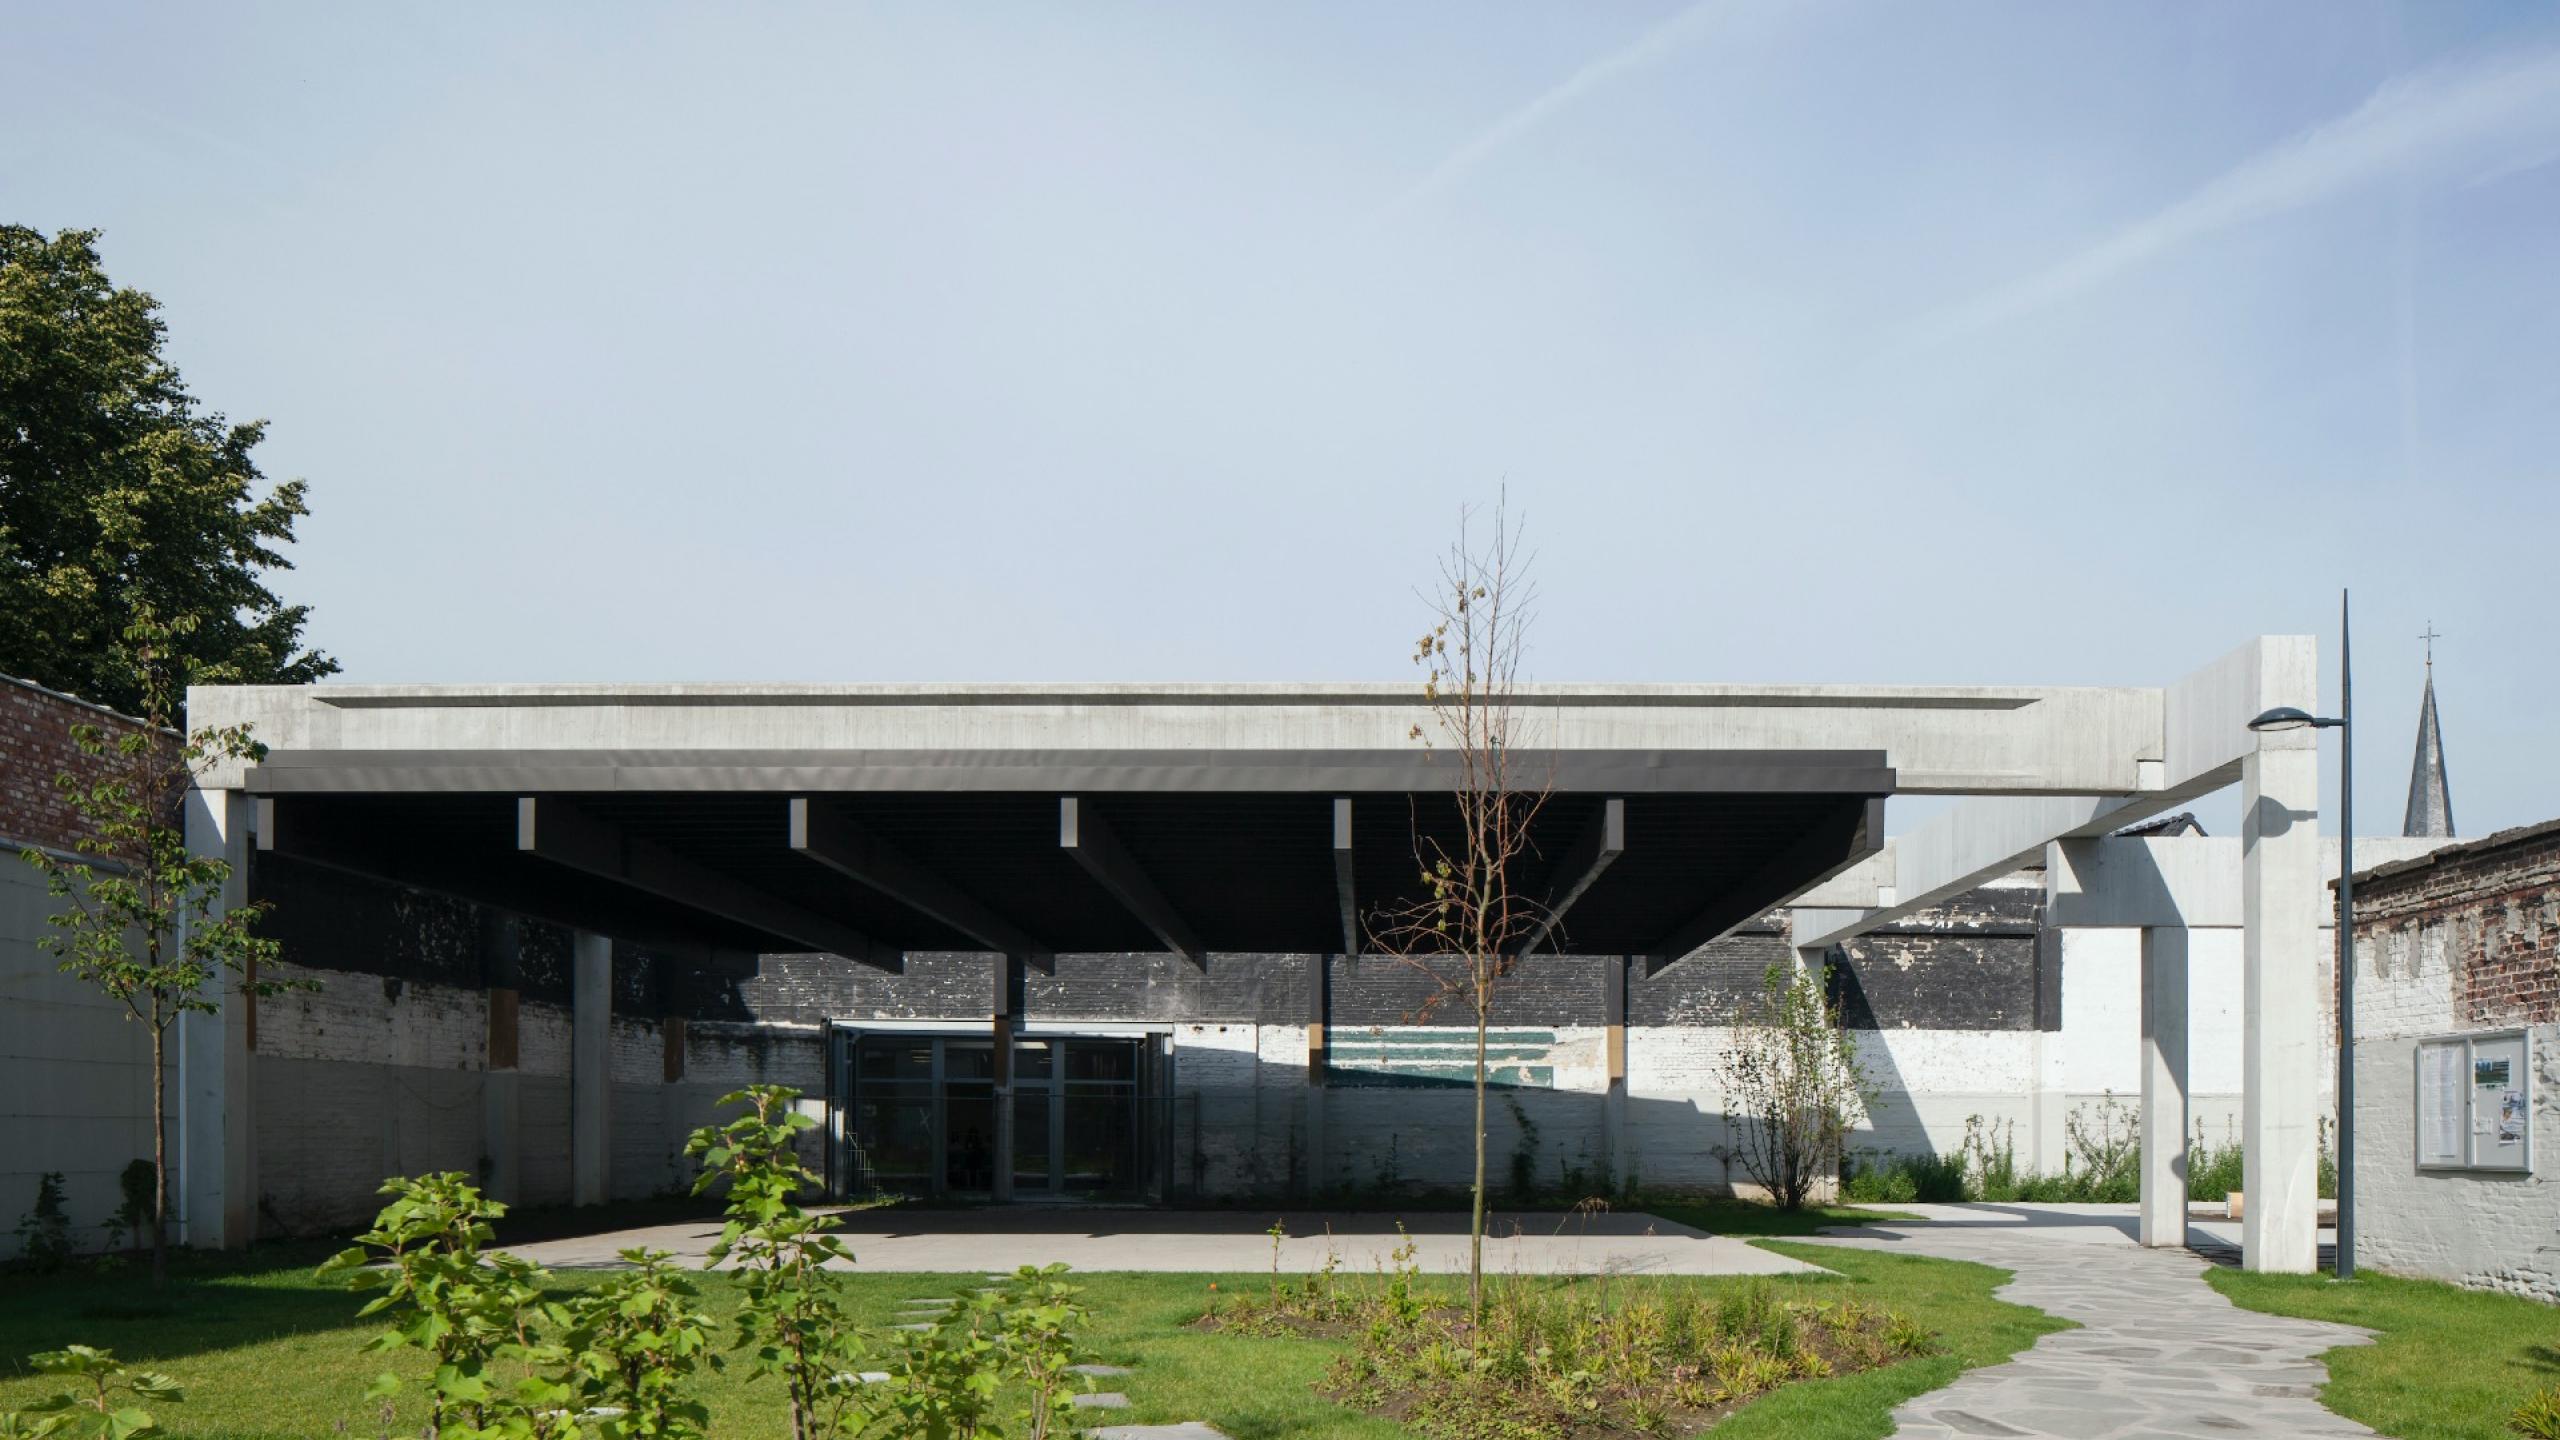 Lab15 wint Publieksjuryprijs van Architectuur Prijs Gent